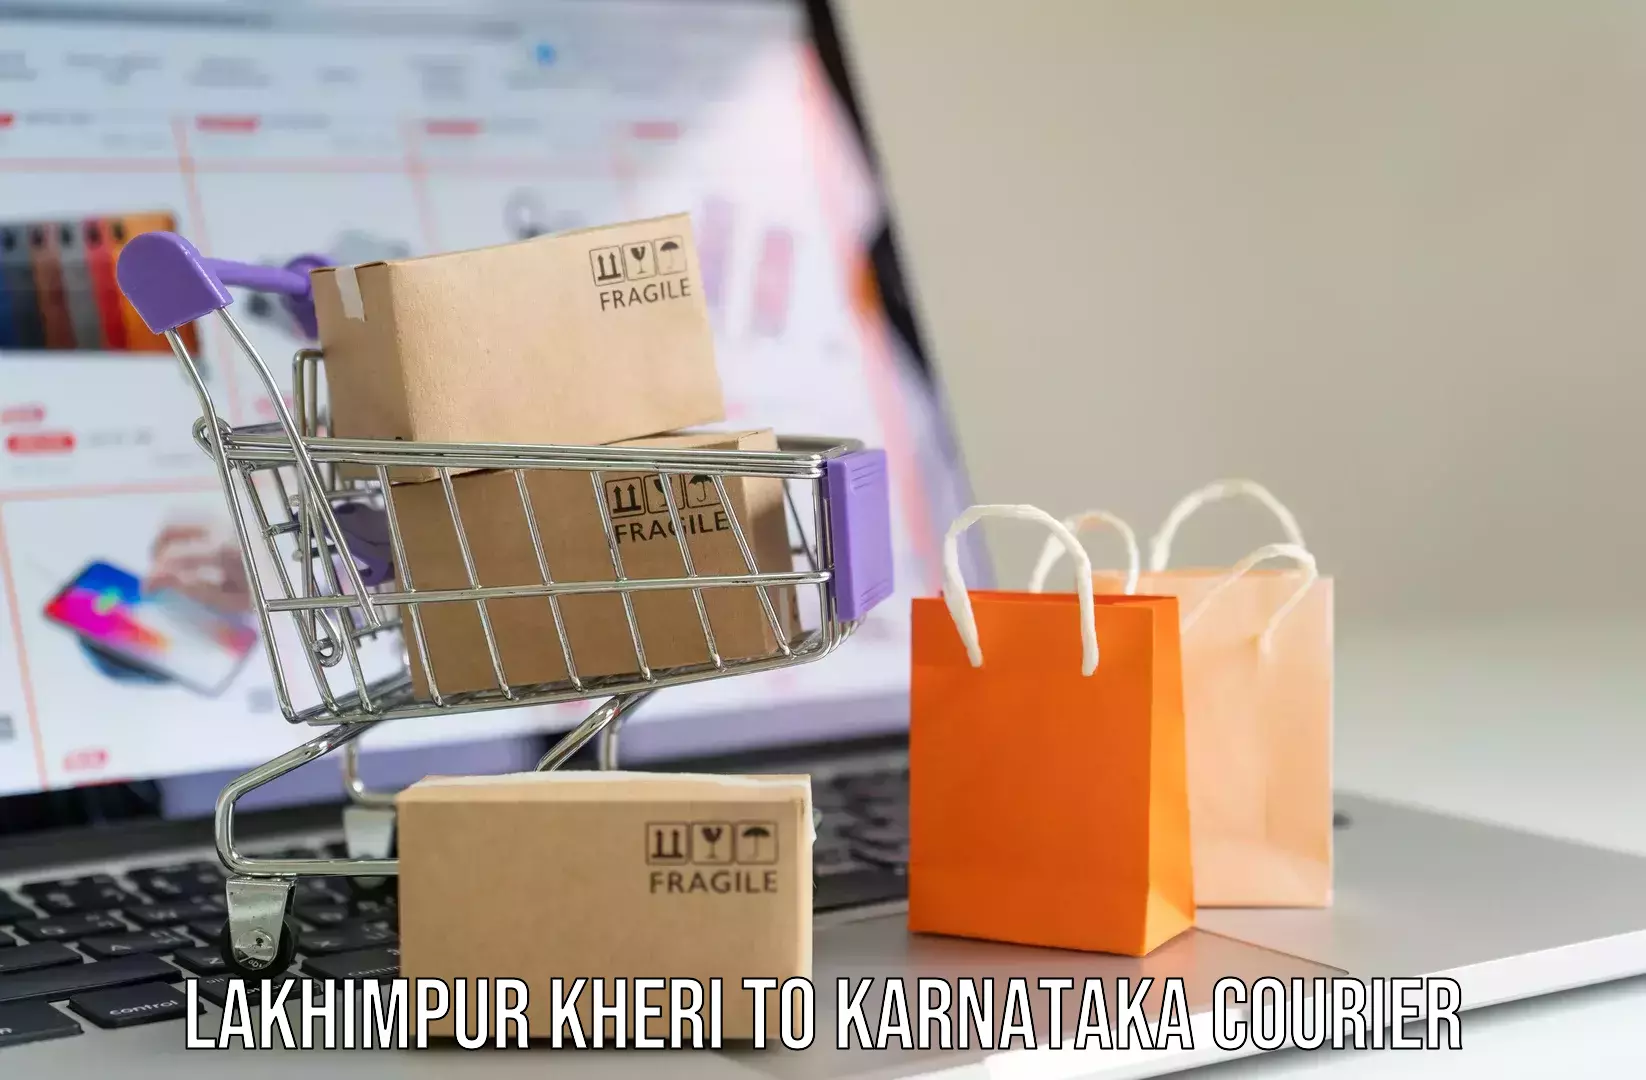 Efficient baggage courier system Lakhimpur Kheri to Karnataka